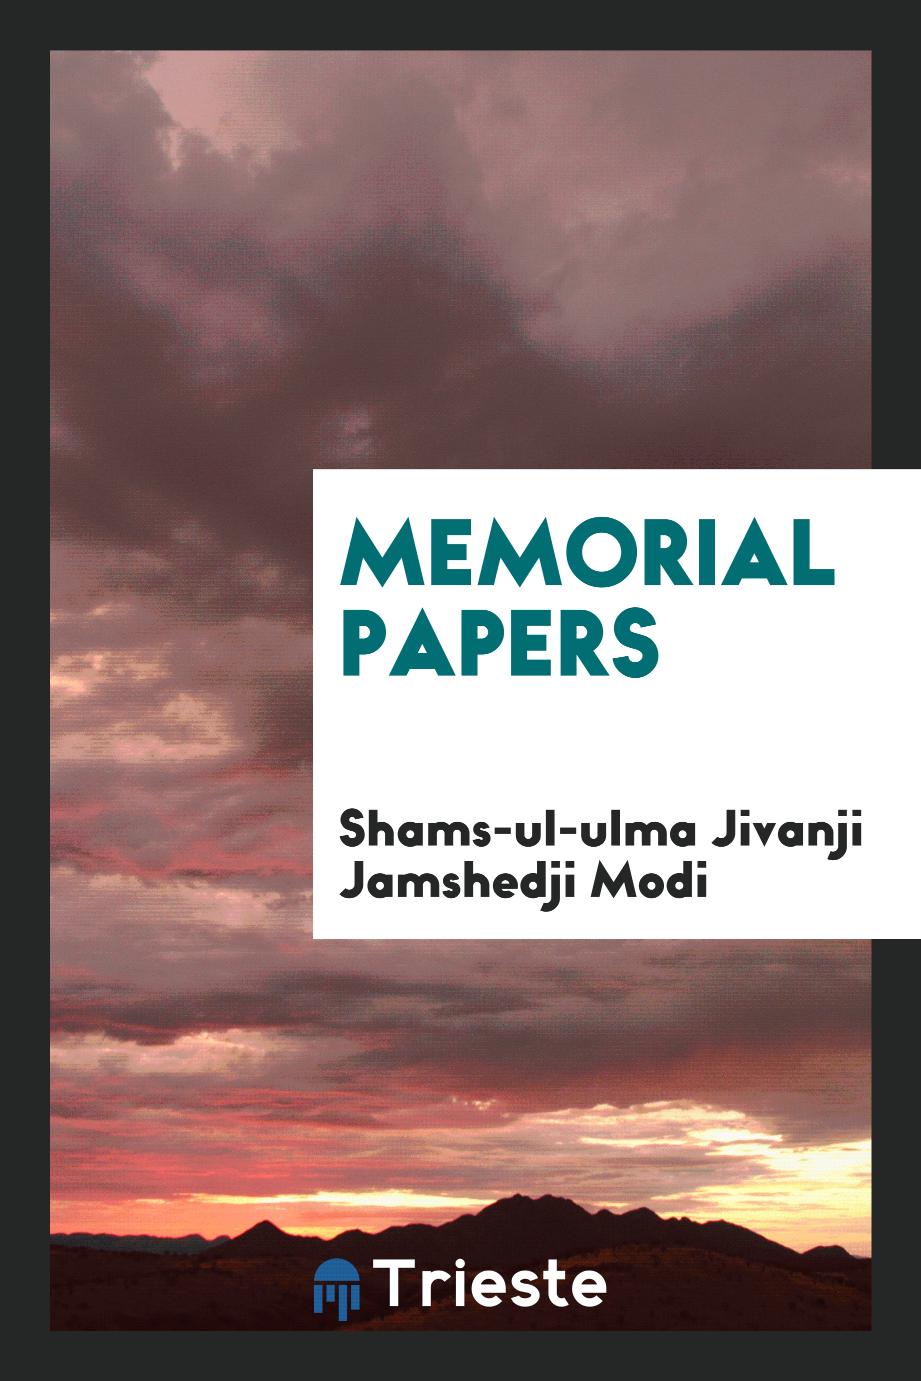 Memorial papers